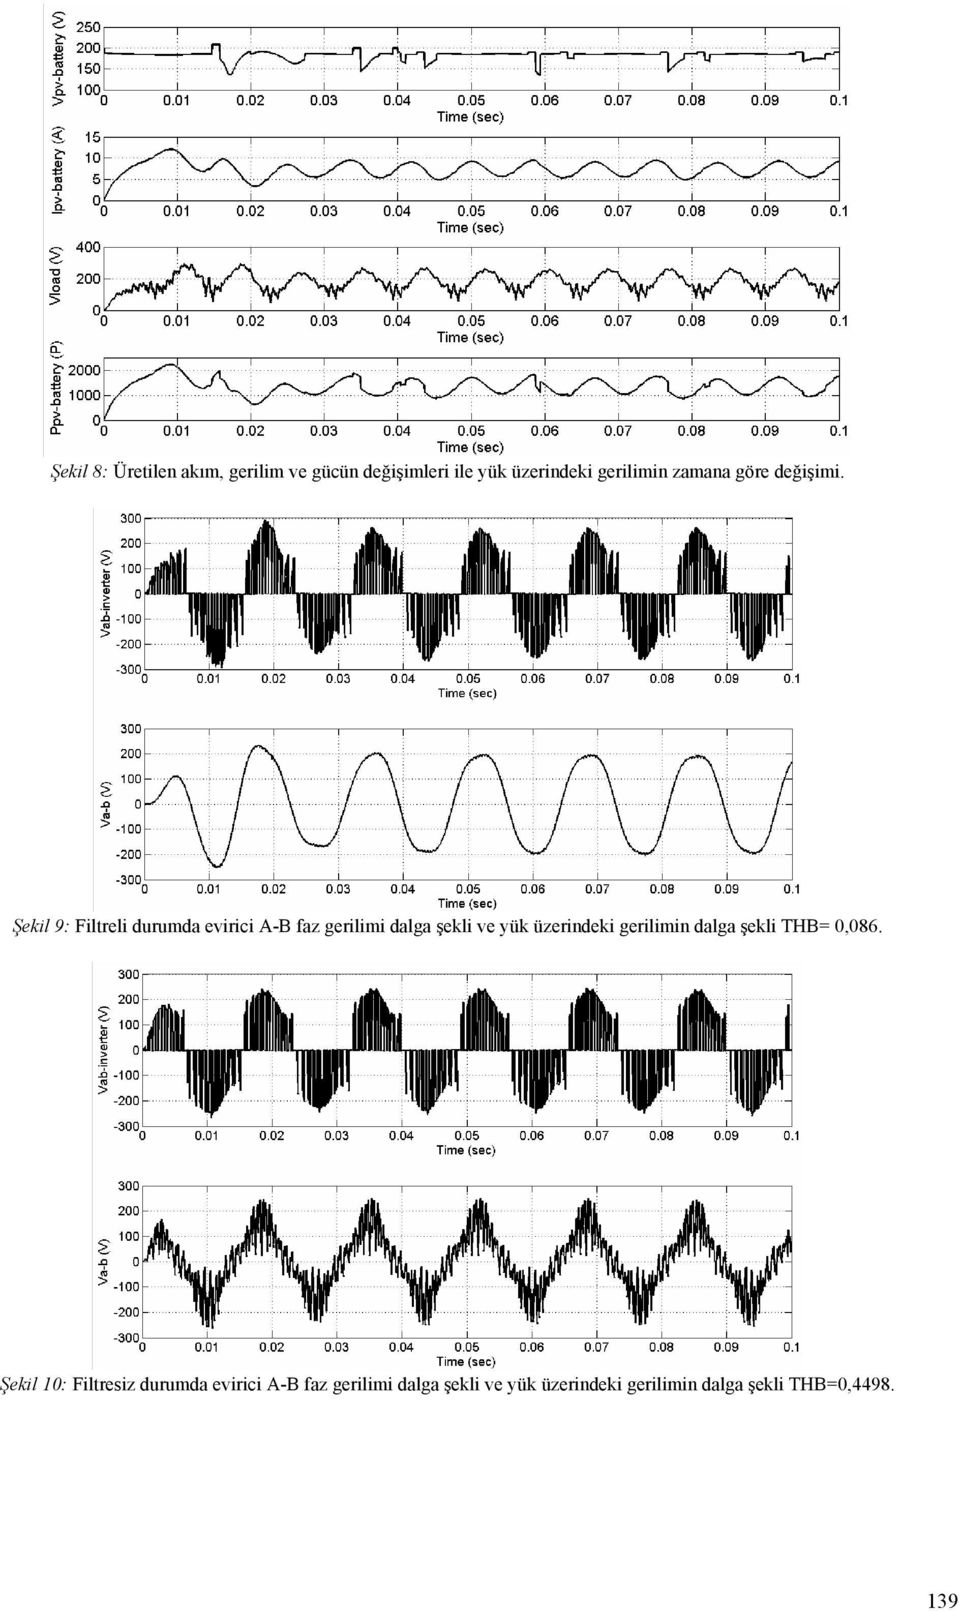 Şekil 9: Filtreli durumda evirici A-B faz gerilimi dalga şekli ve yük üzerindeki